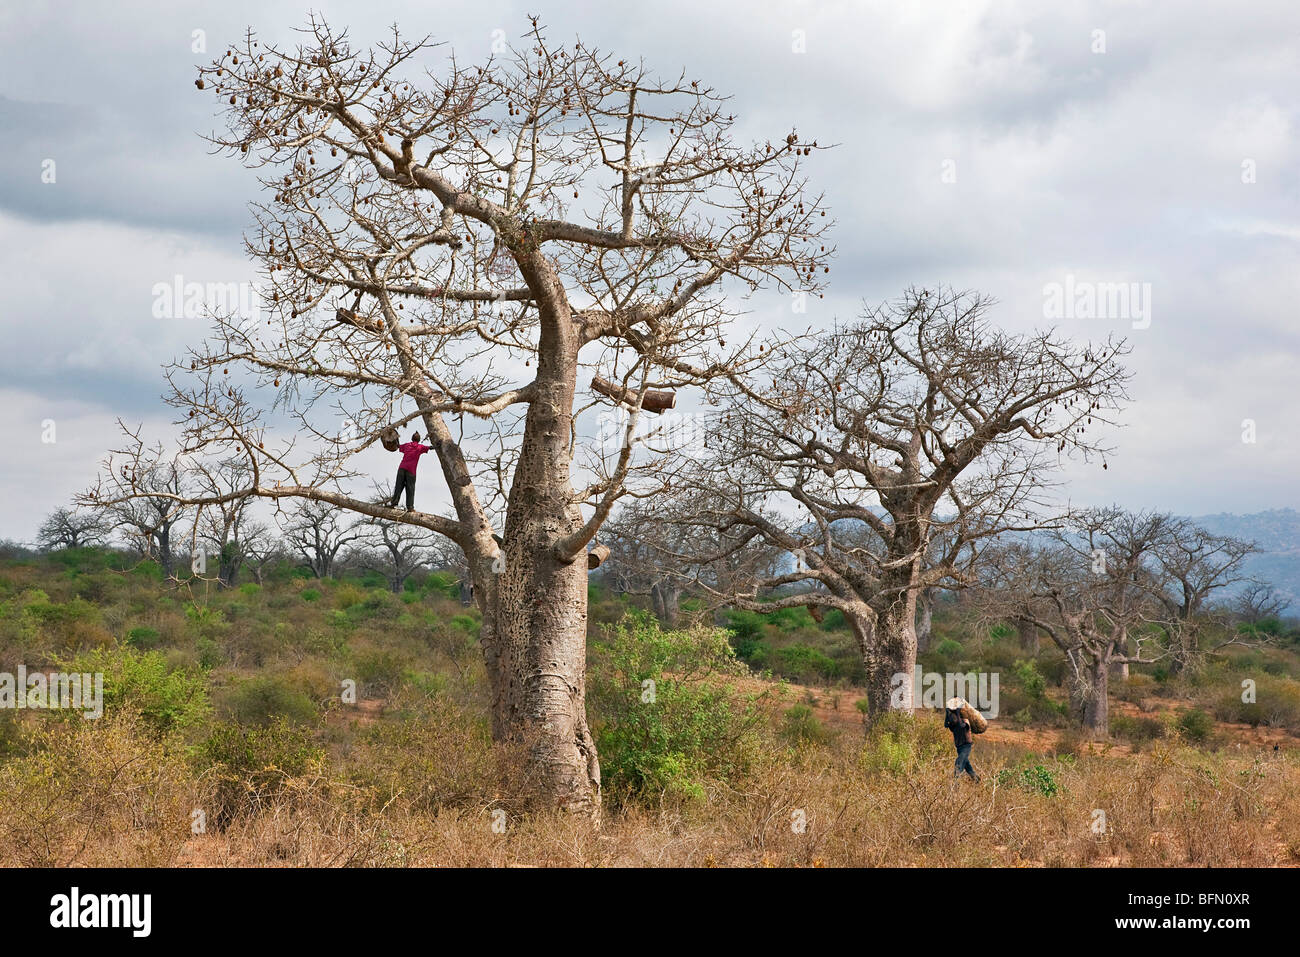 Kenya, Kibwezi. Un hombre lleva una colmena tradicional a su amigo para colgar en un gran árbol baobab. Foto de stock